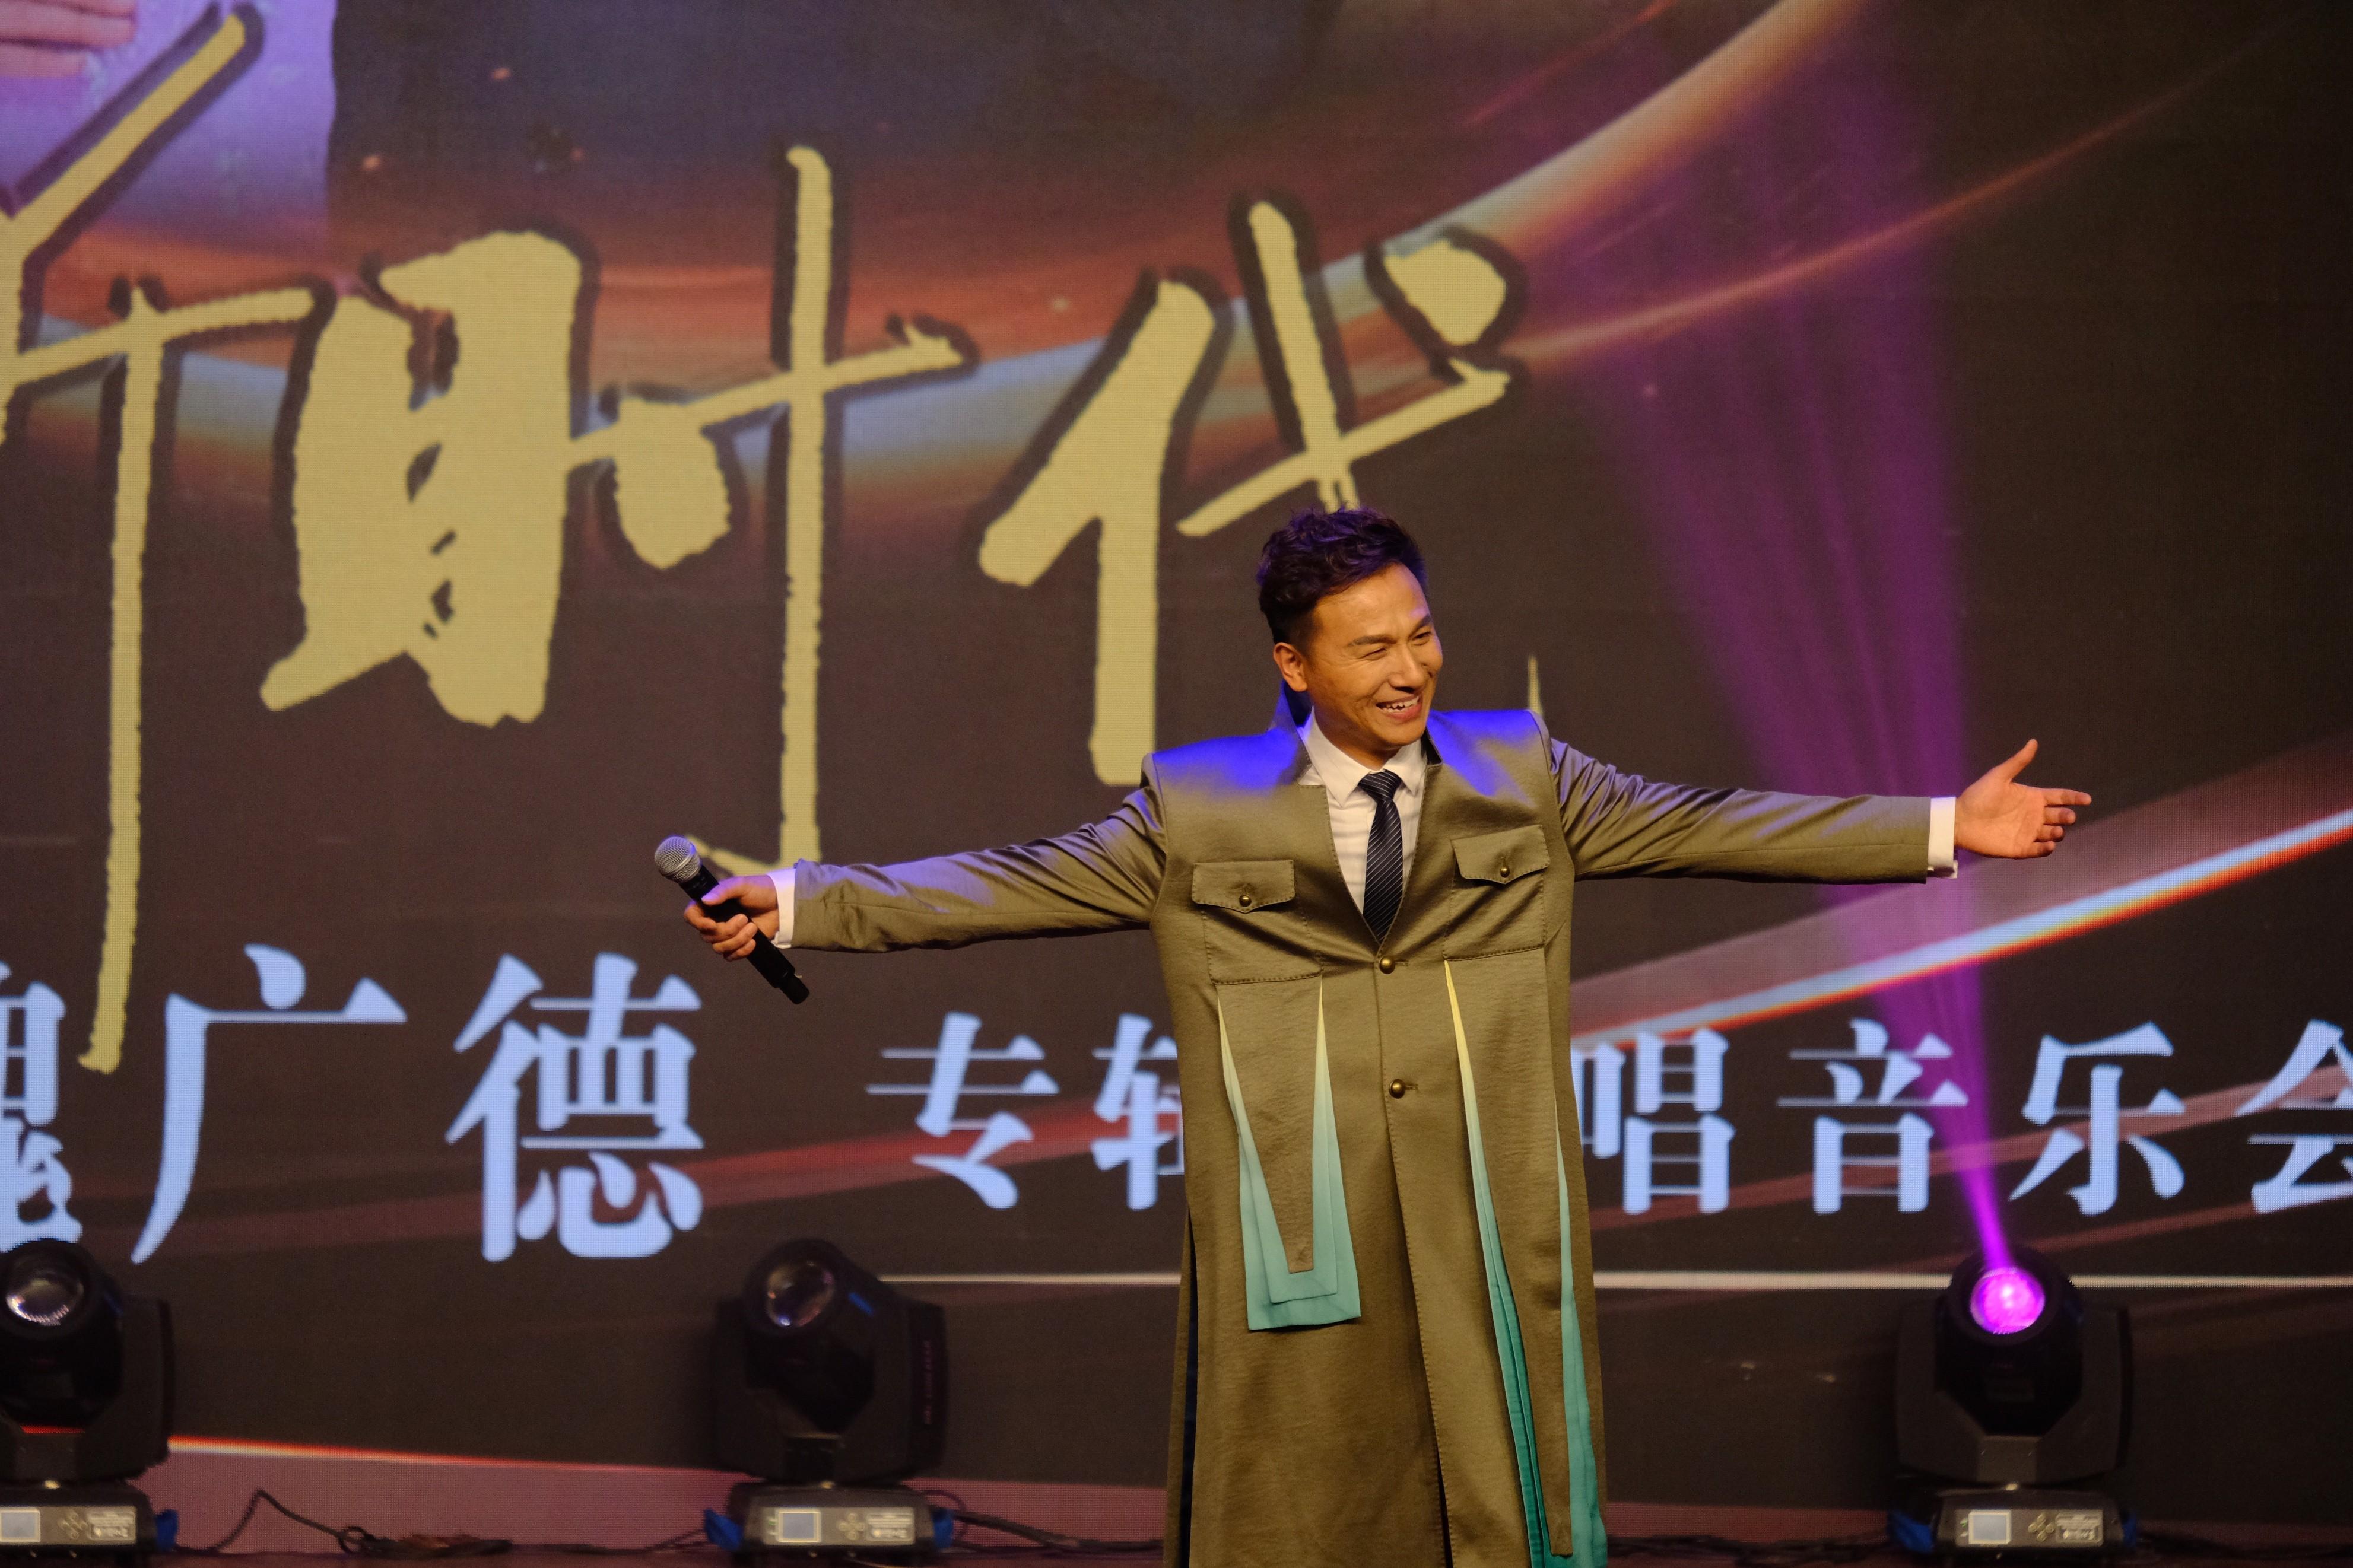 歌唱家魏⼴德领航新时代专辑独唱⾳乐会唱响北京